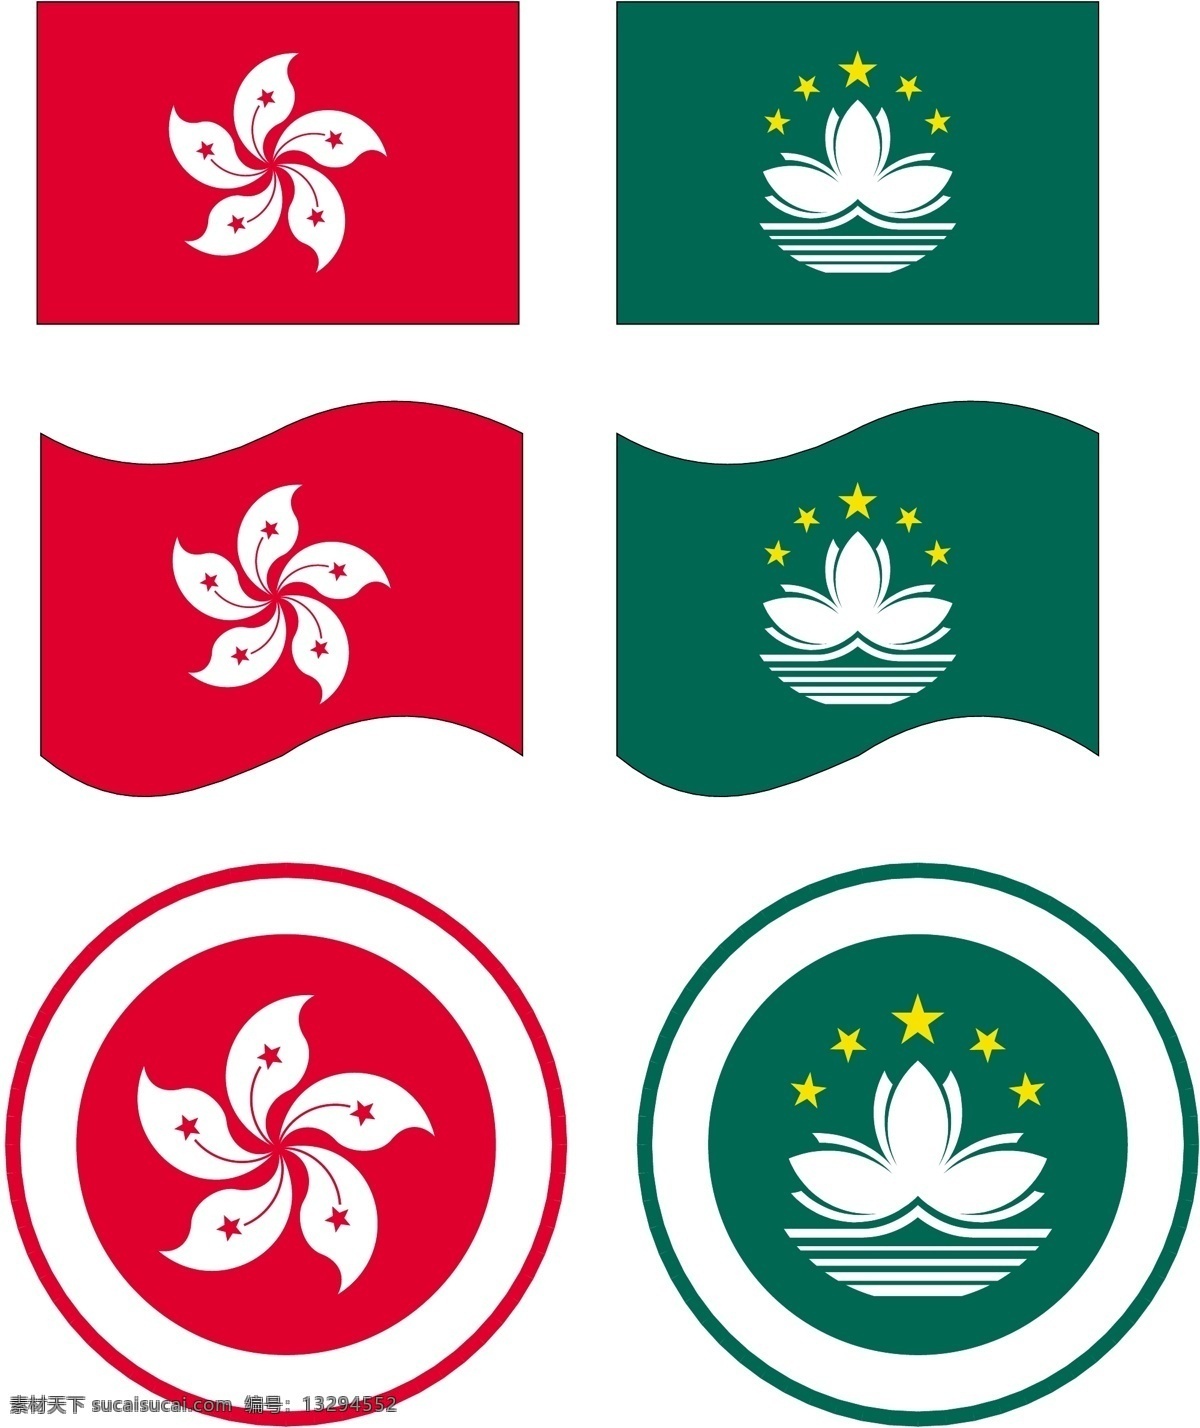 香港澳门国旗 矢量 cs 标志图标 公共标识标志